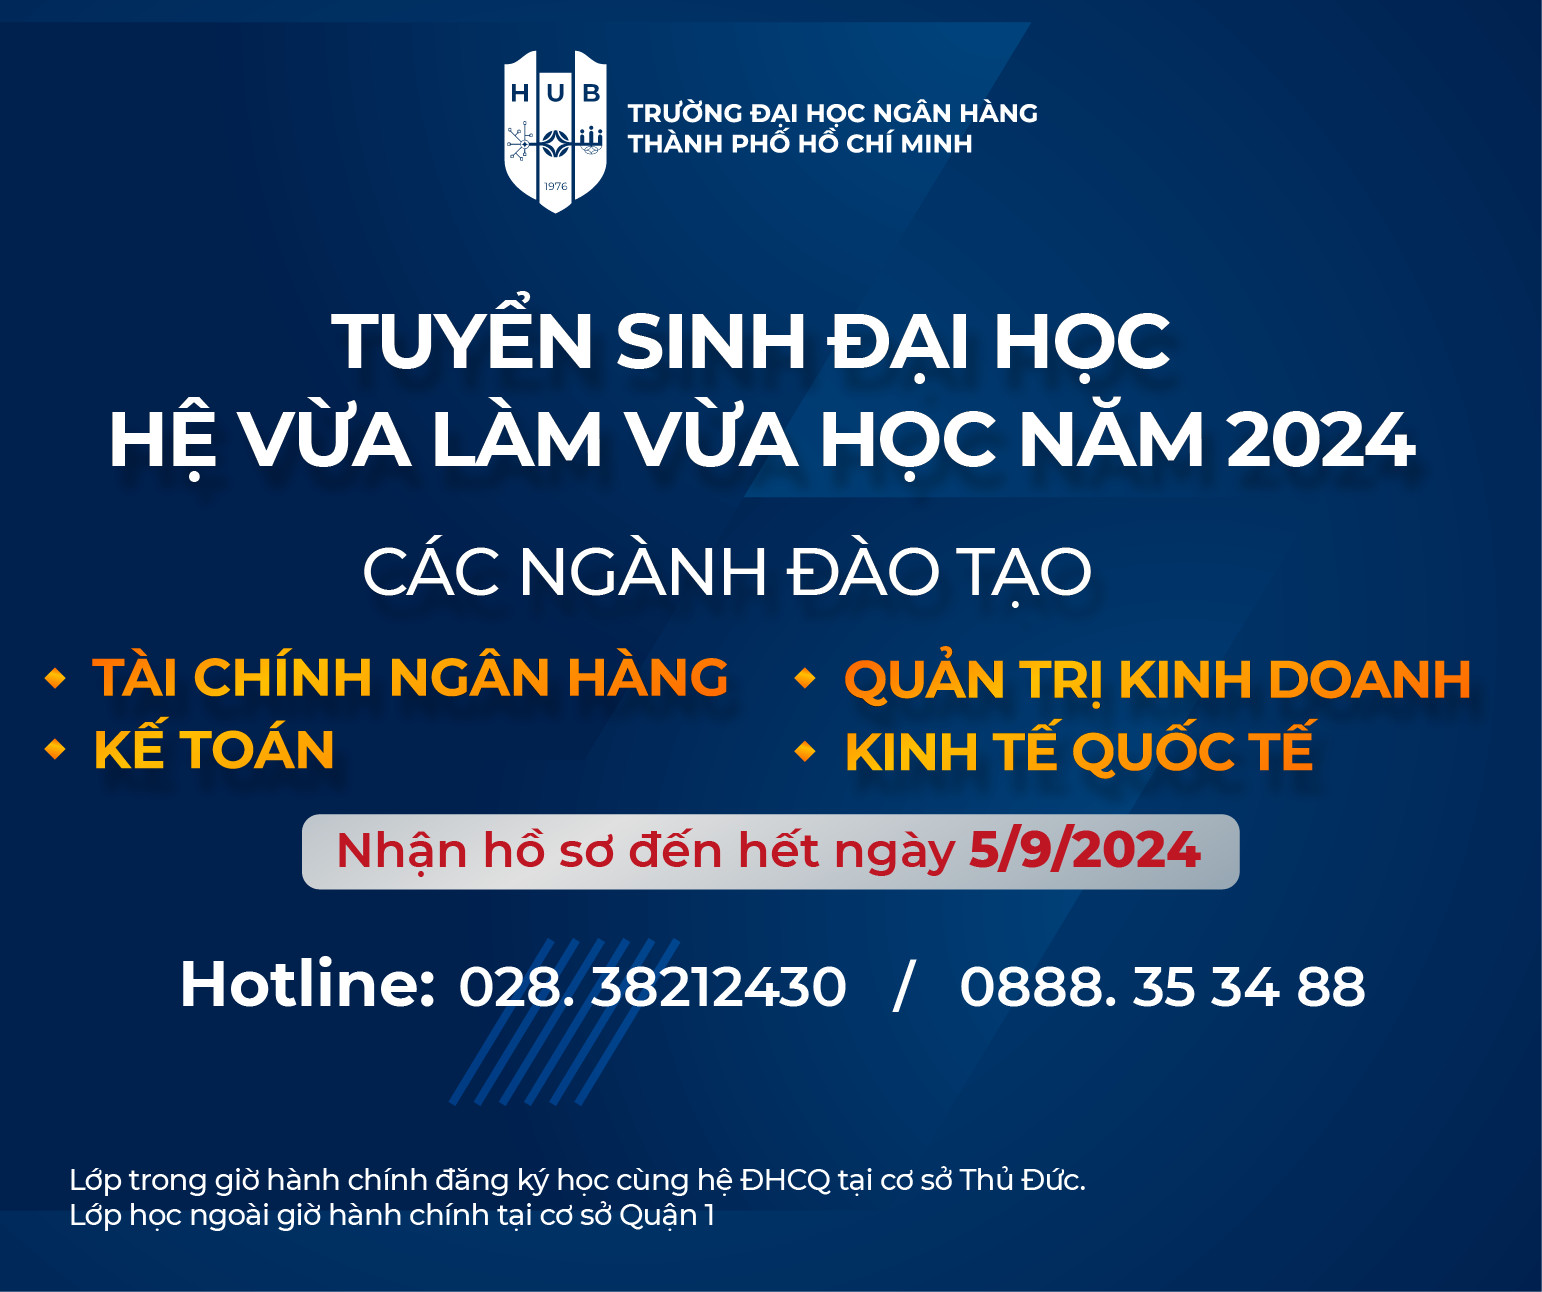 thong-bao-tuyen-sinh-dai-hoc-he-vua-lam-vua-hoc-nam-2024